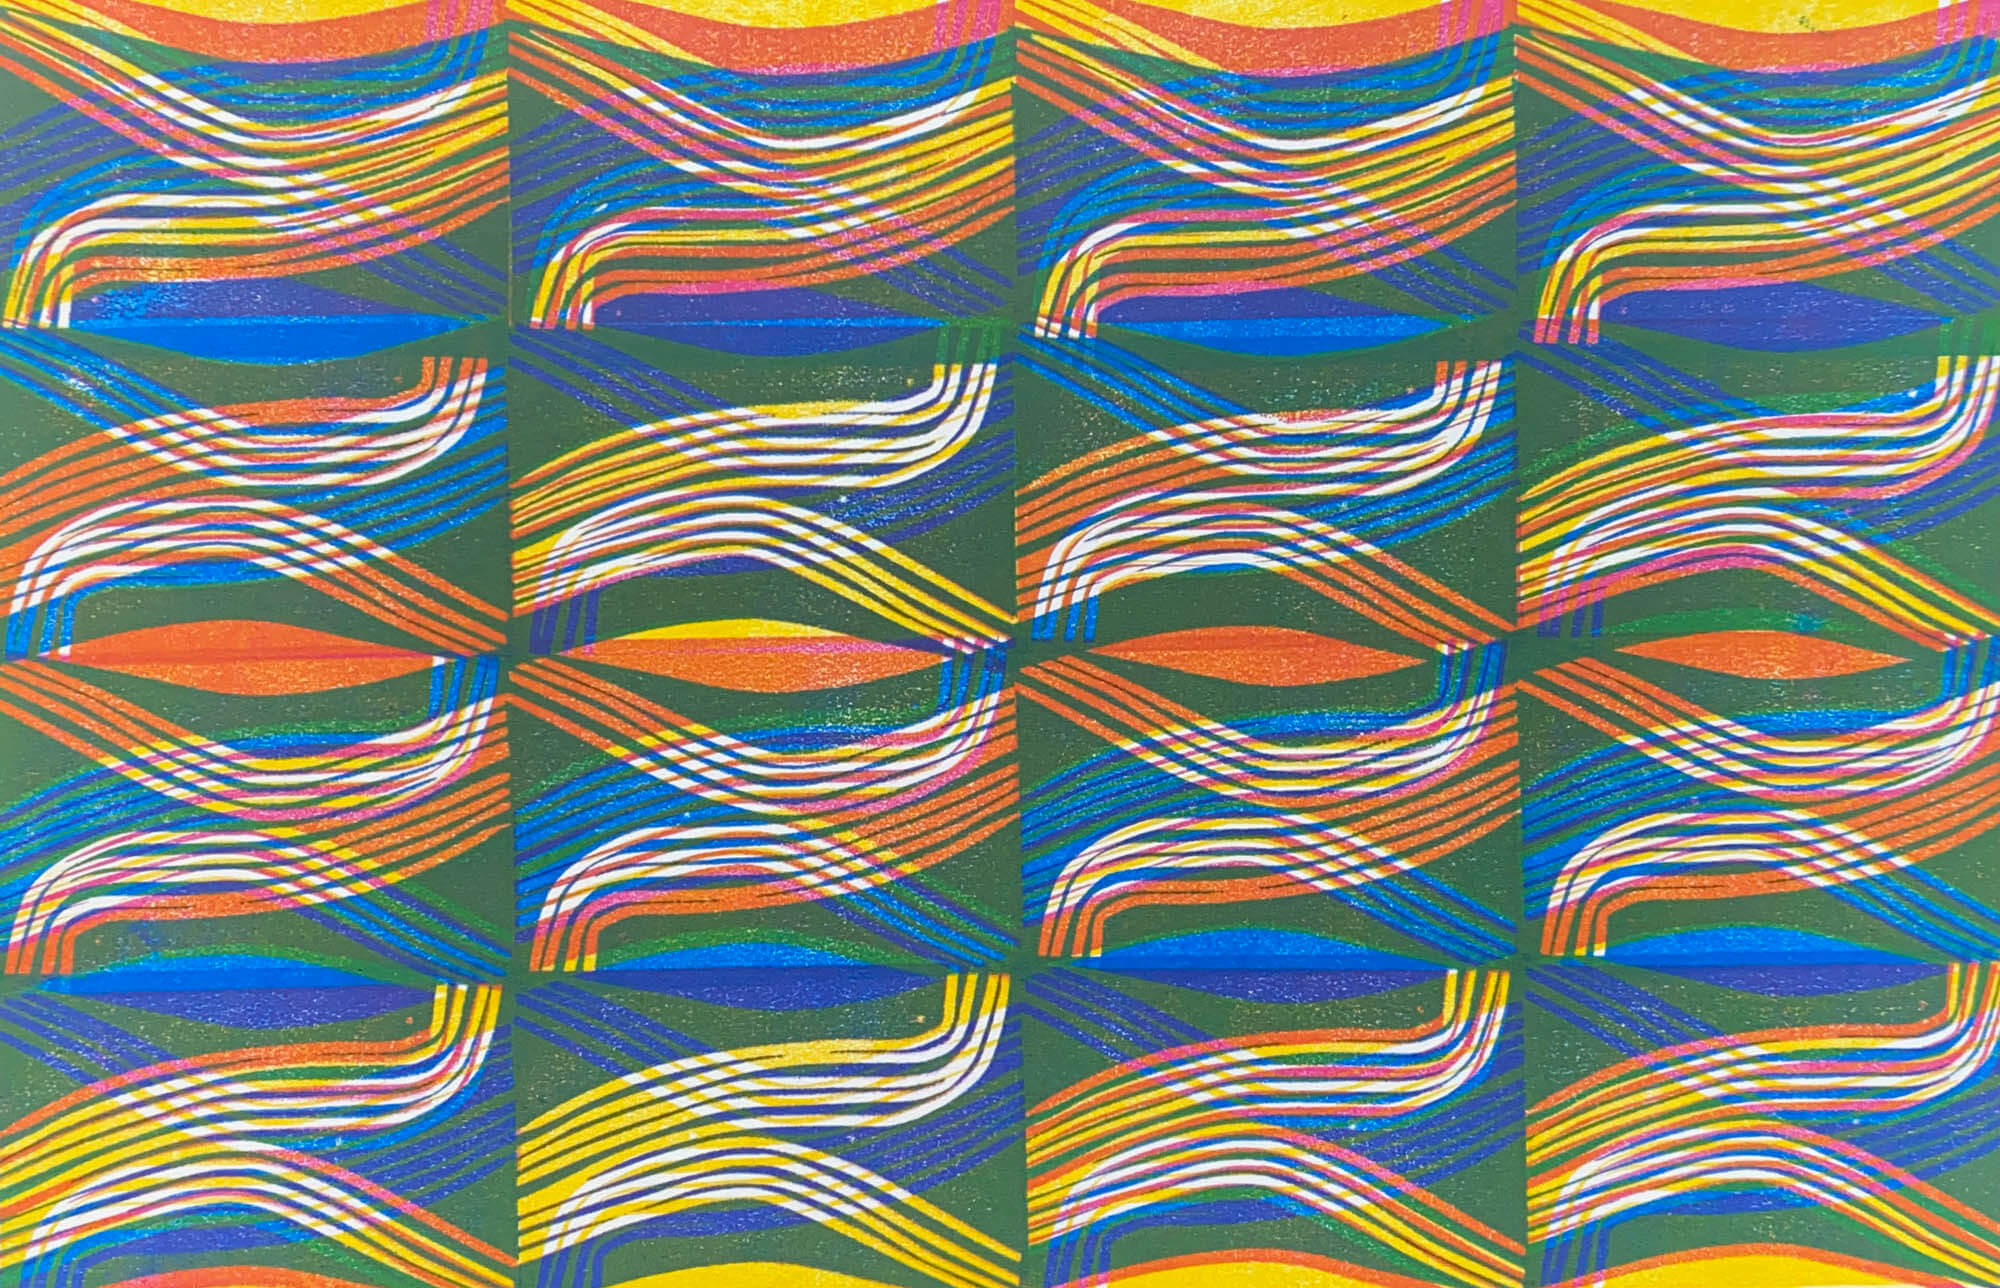 Block printing patterns - by Sarah Matthews